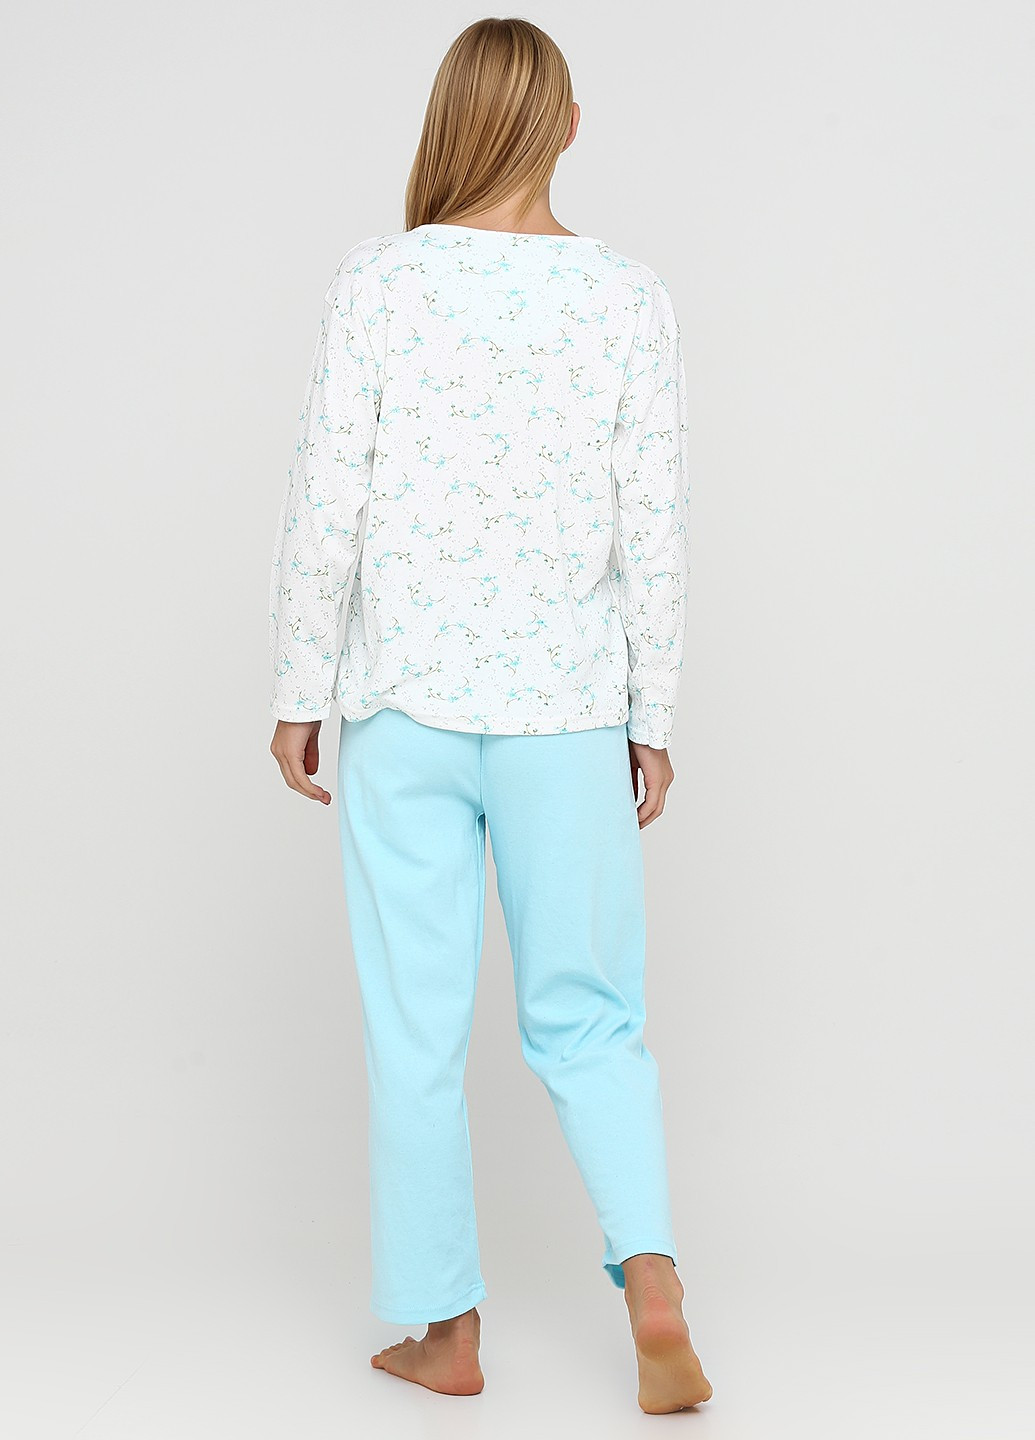 Мятная зимняя комплект плотный трикотаж (свитшот, брюки) Glisa Pijama